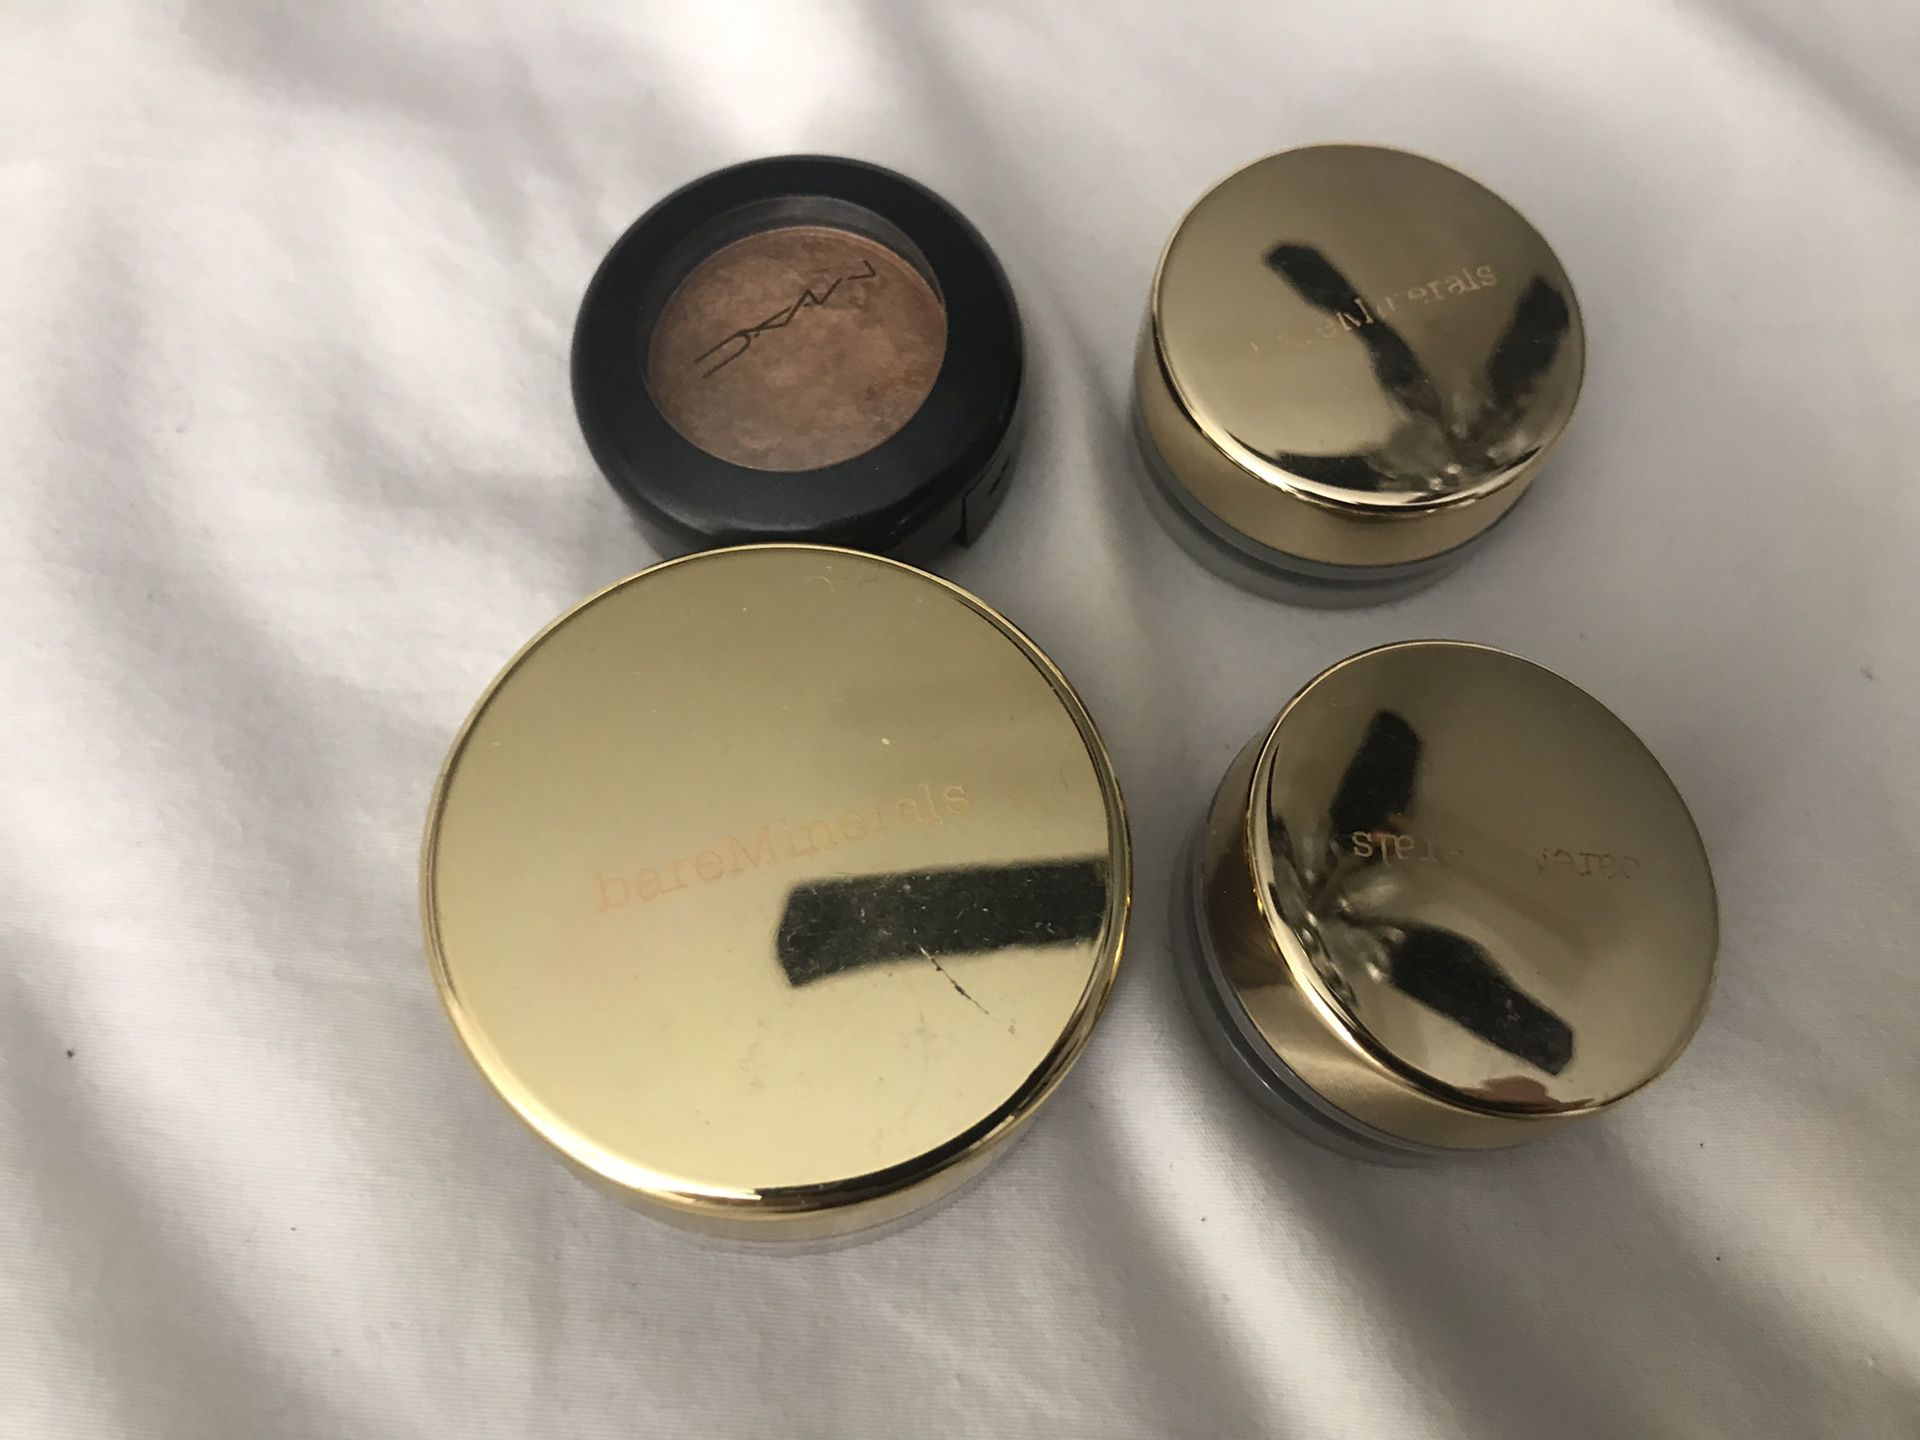 4 product makeup bundle